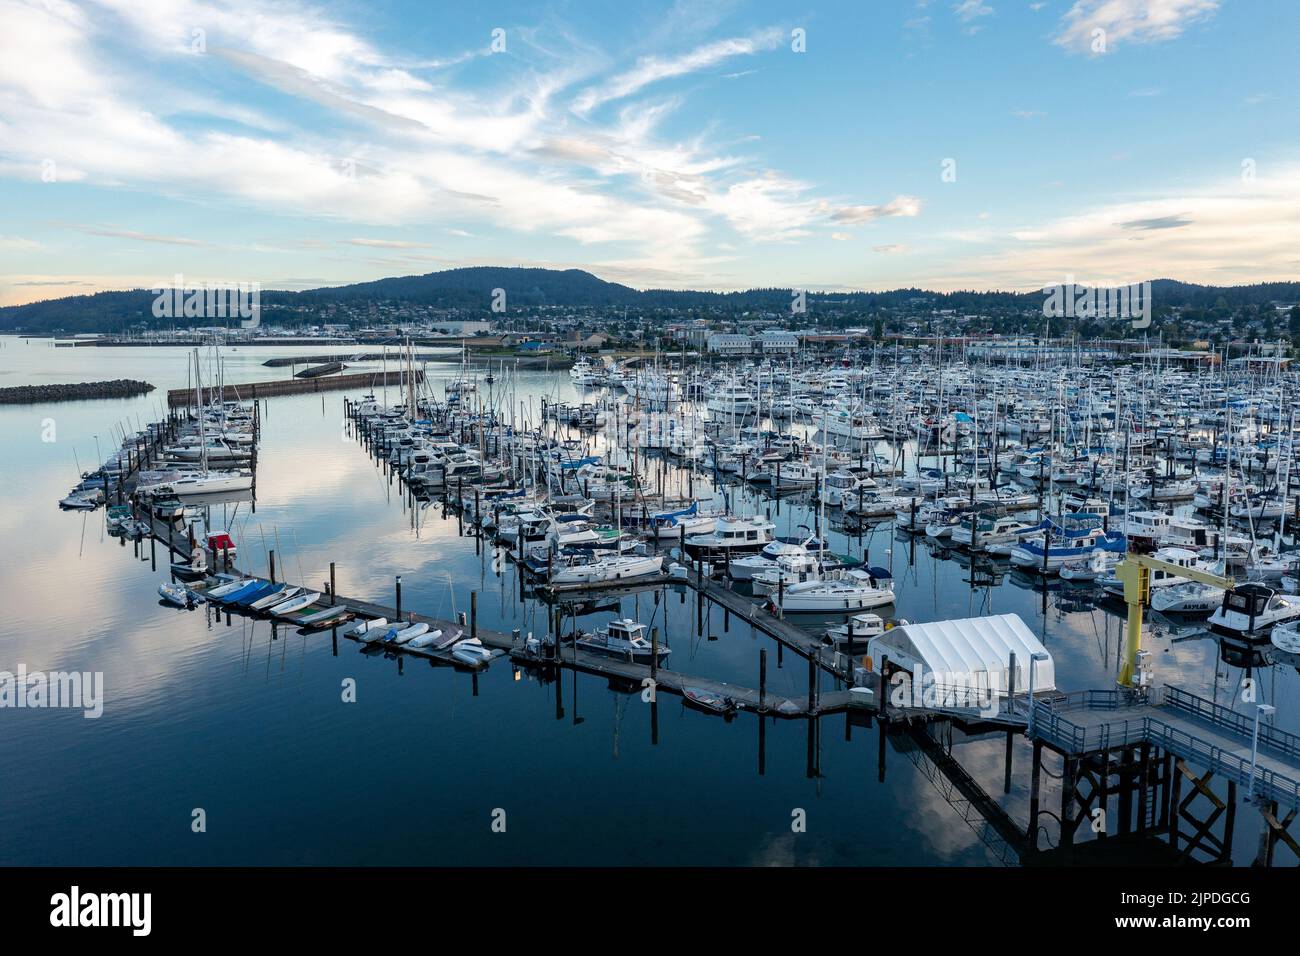 The Gorgeous Sea Port Town of Anacortes Washington Stock Photo